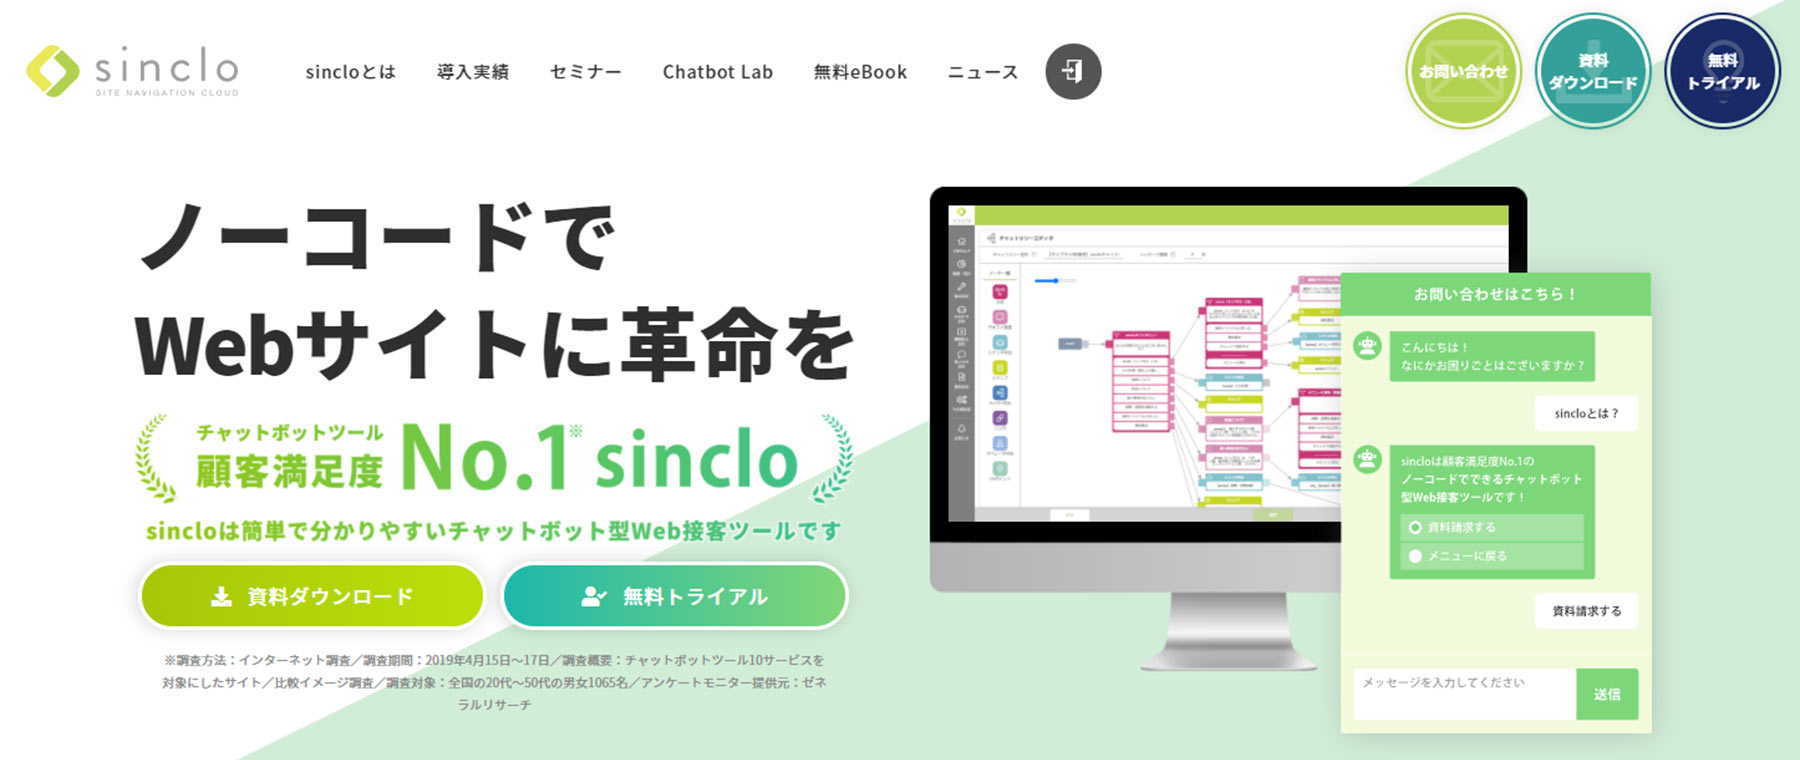 sinclo公式Webサイト